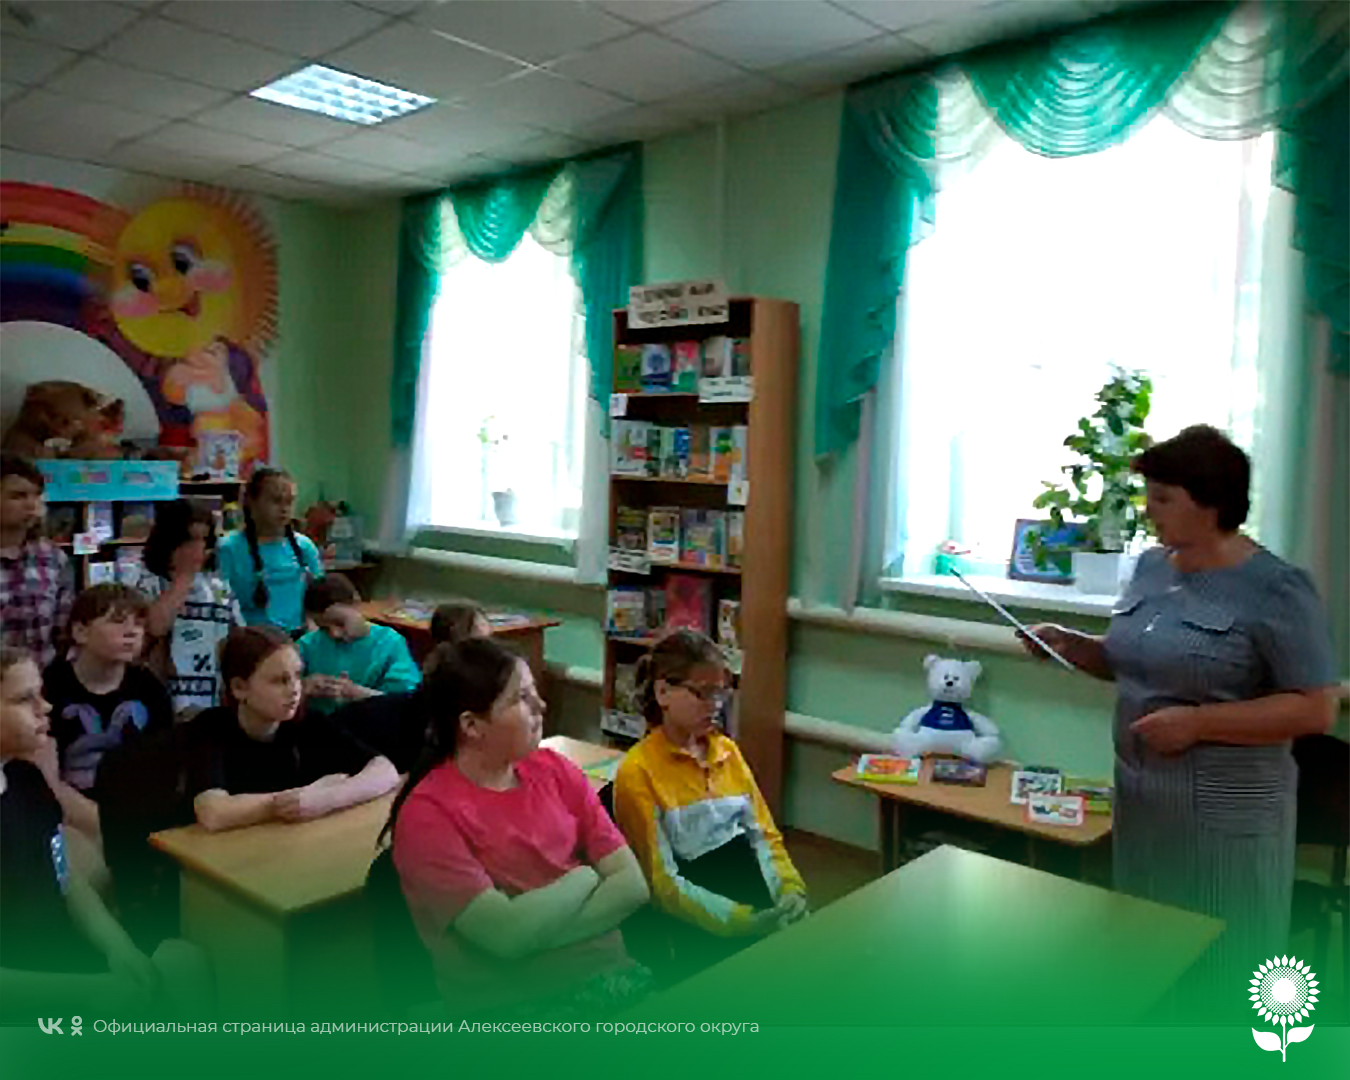 В модельной библиотеке села Хлевище прошёл литературный час знакомства «Авторы, которых читают сегодня».